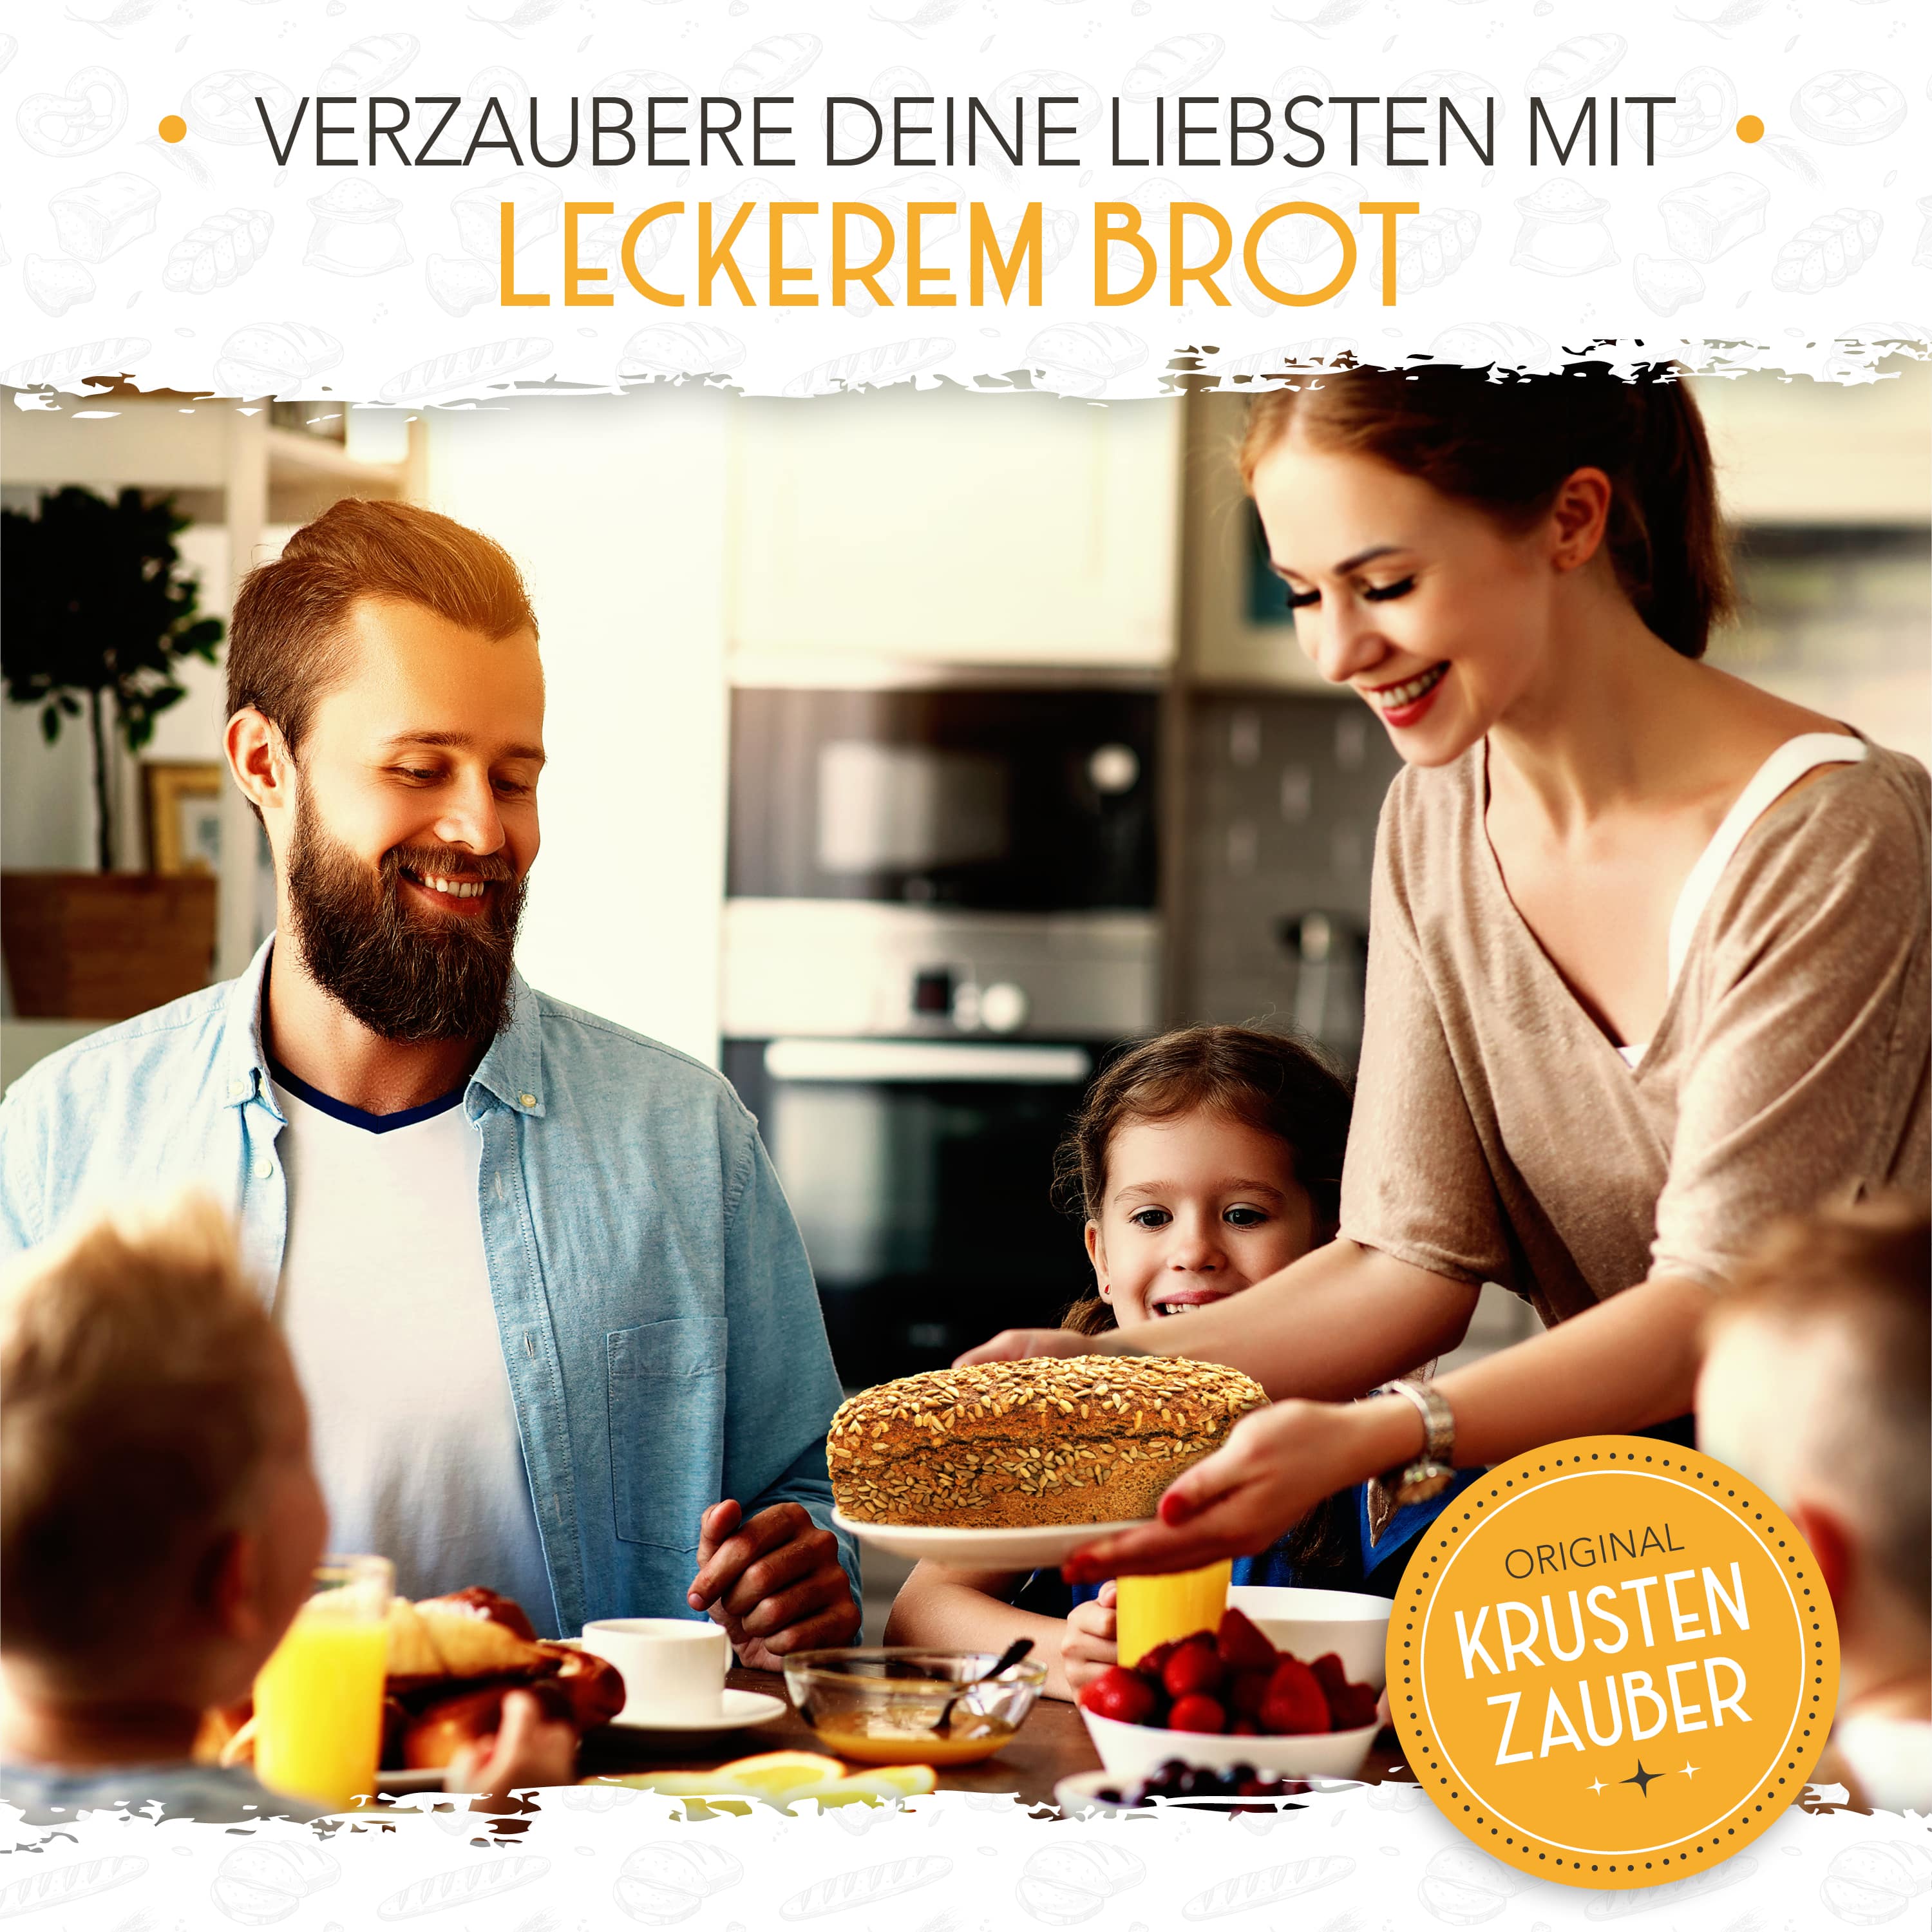 Eine glückliche Familie freut sich über ein perfekt gebackenes Brot aus einem Krustenzauber Brotbacktopf.